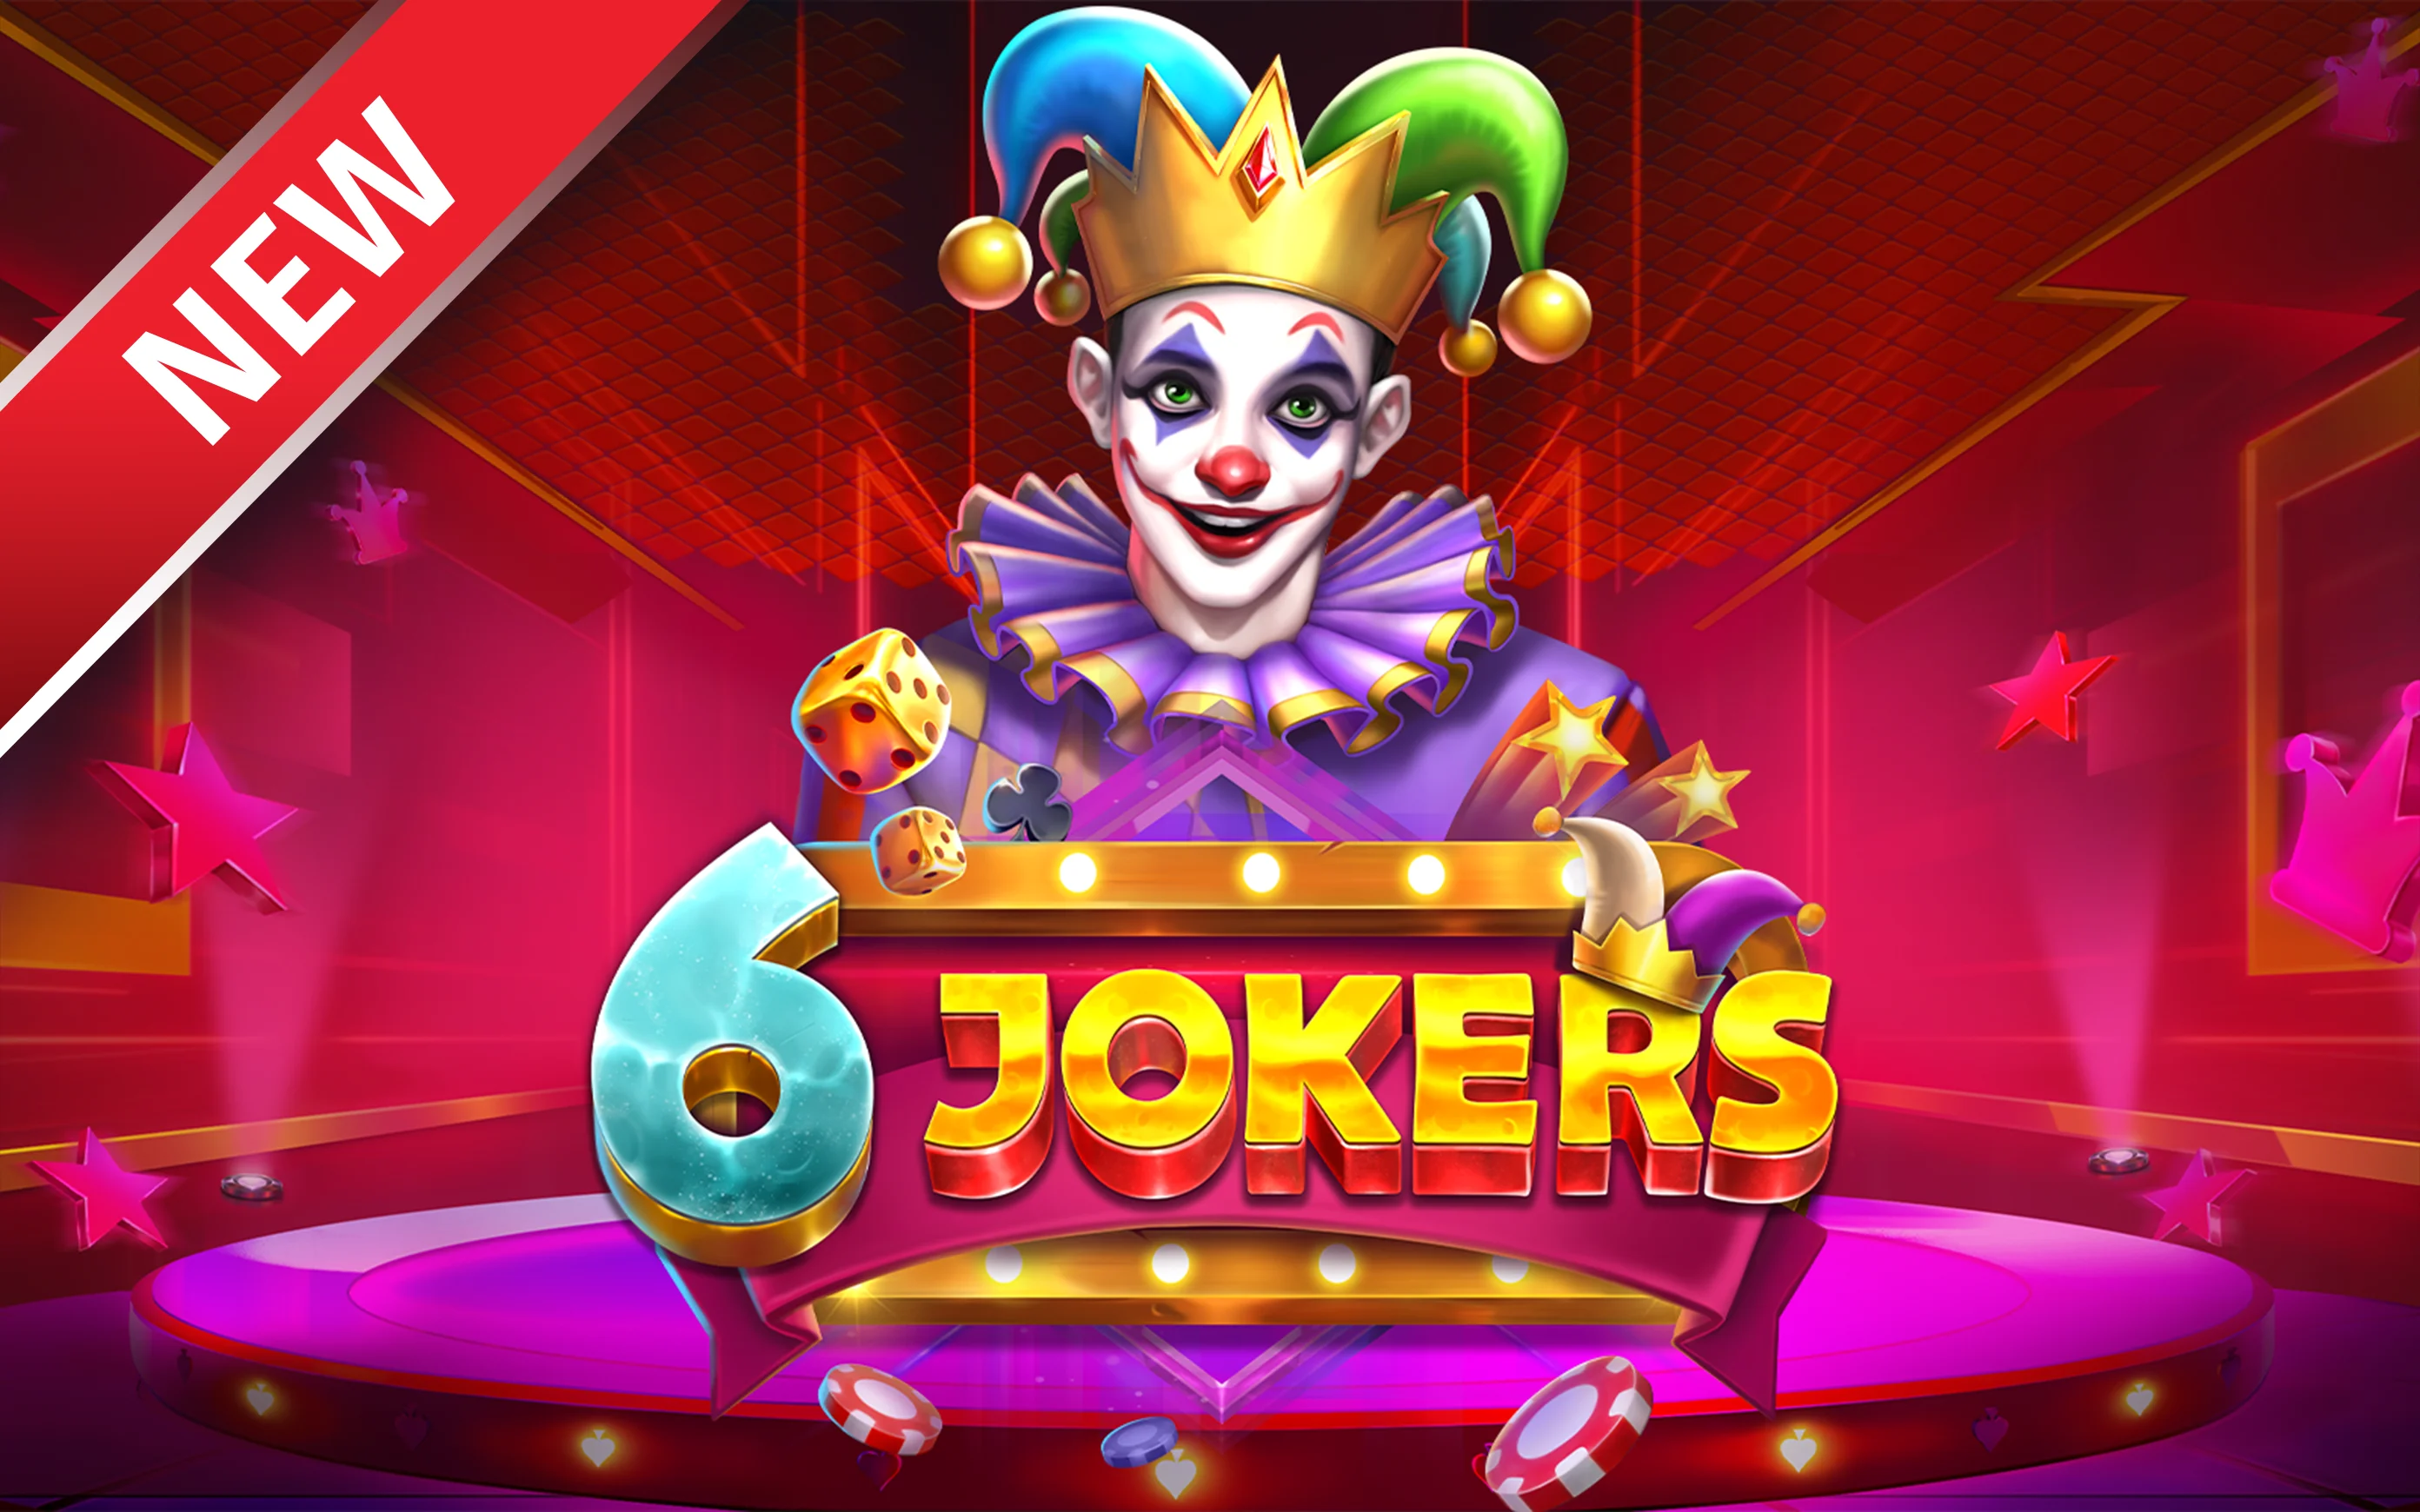 Play 6 Jokers on Starcasino.be online casino